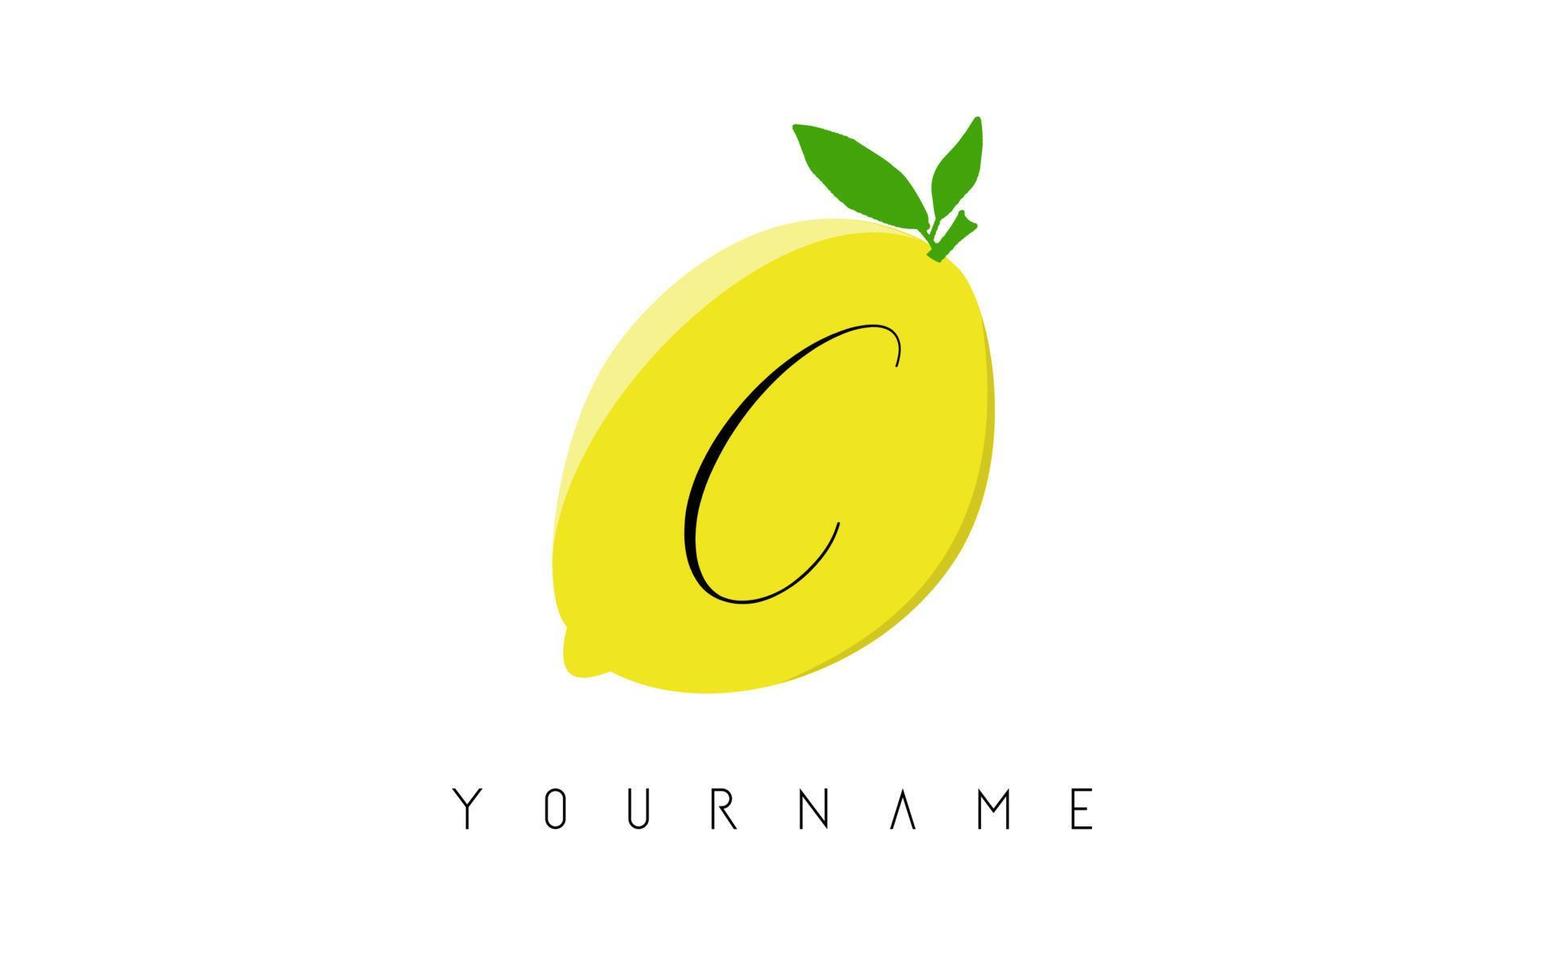 Handwritten C letter logo design with lemon background. vector